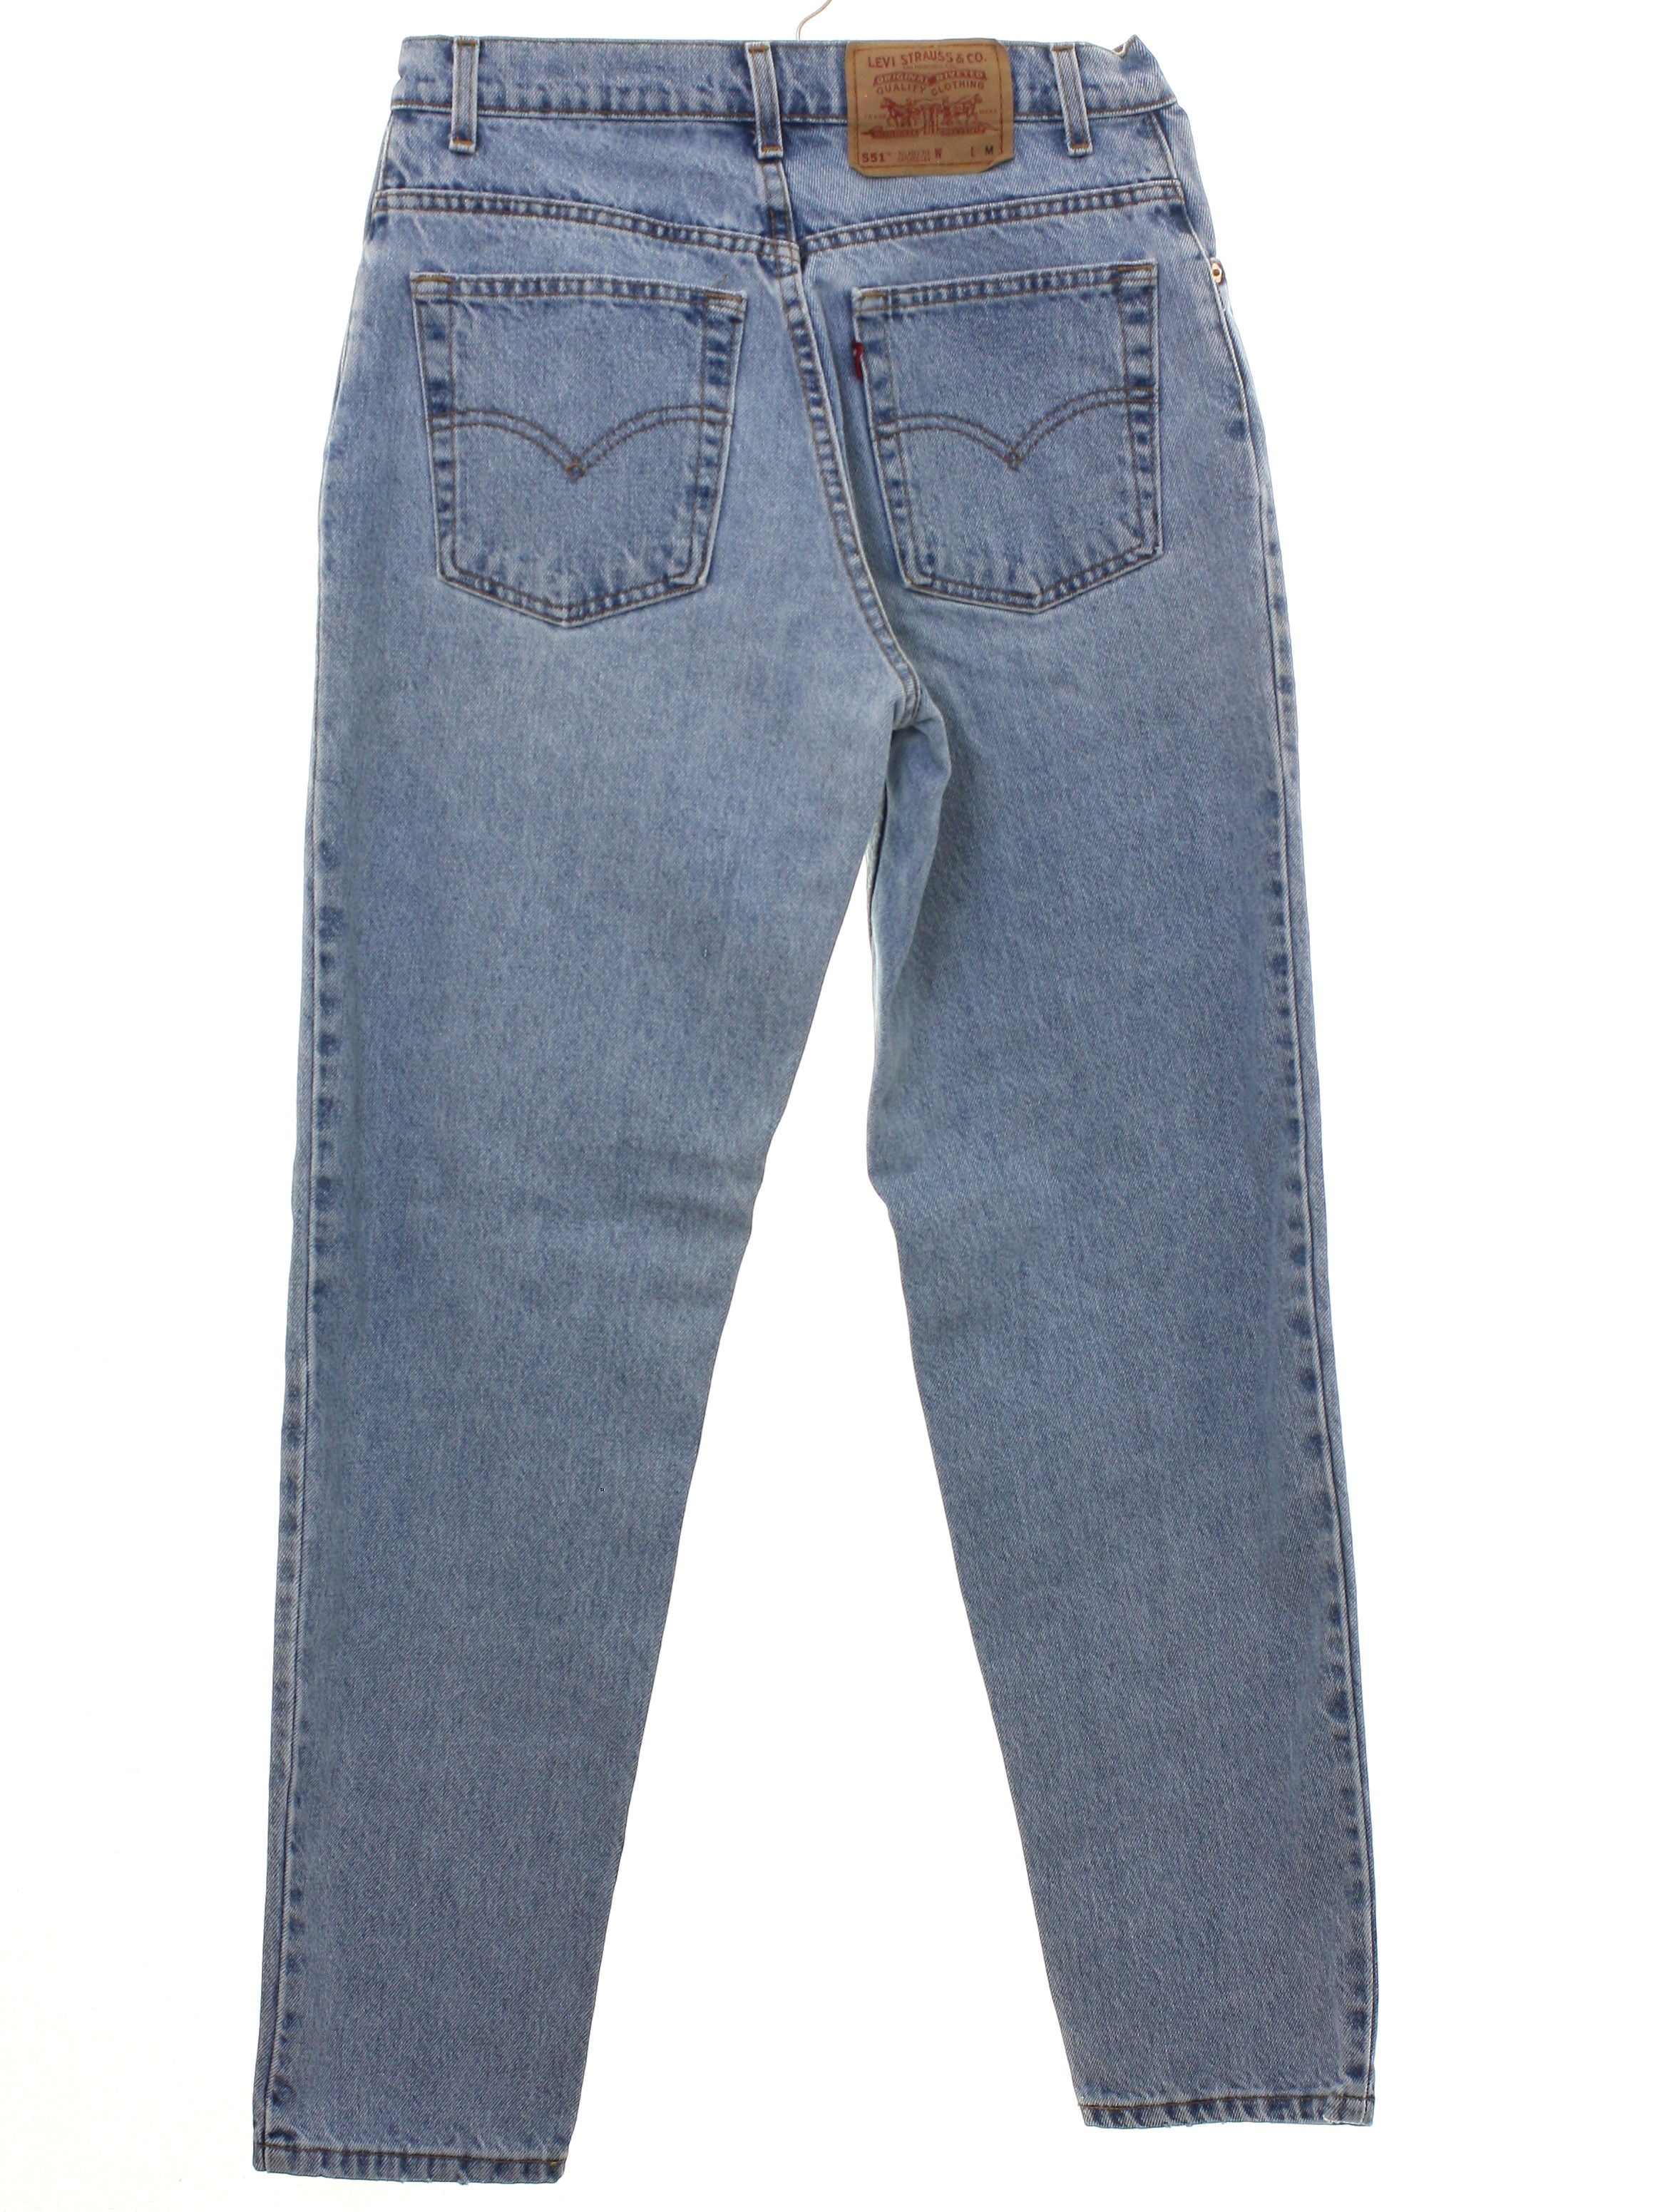 levis 551 womens jeans